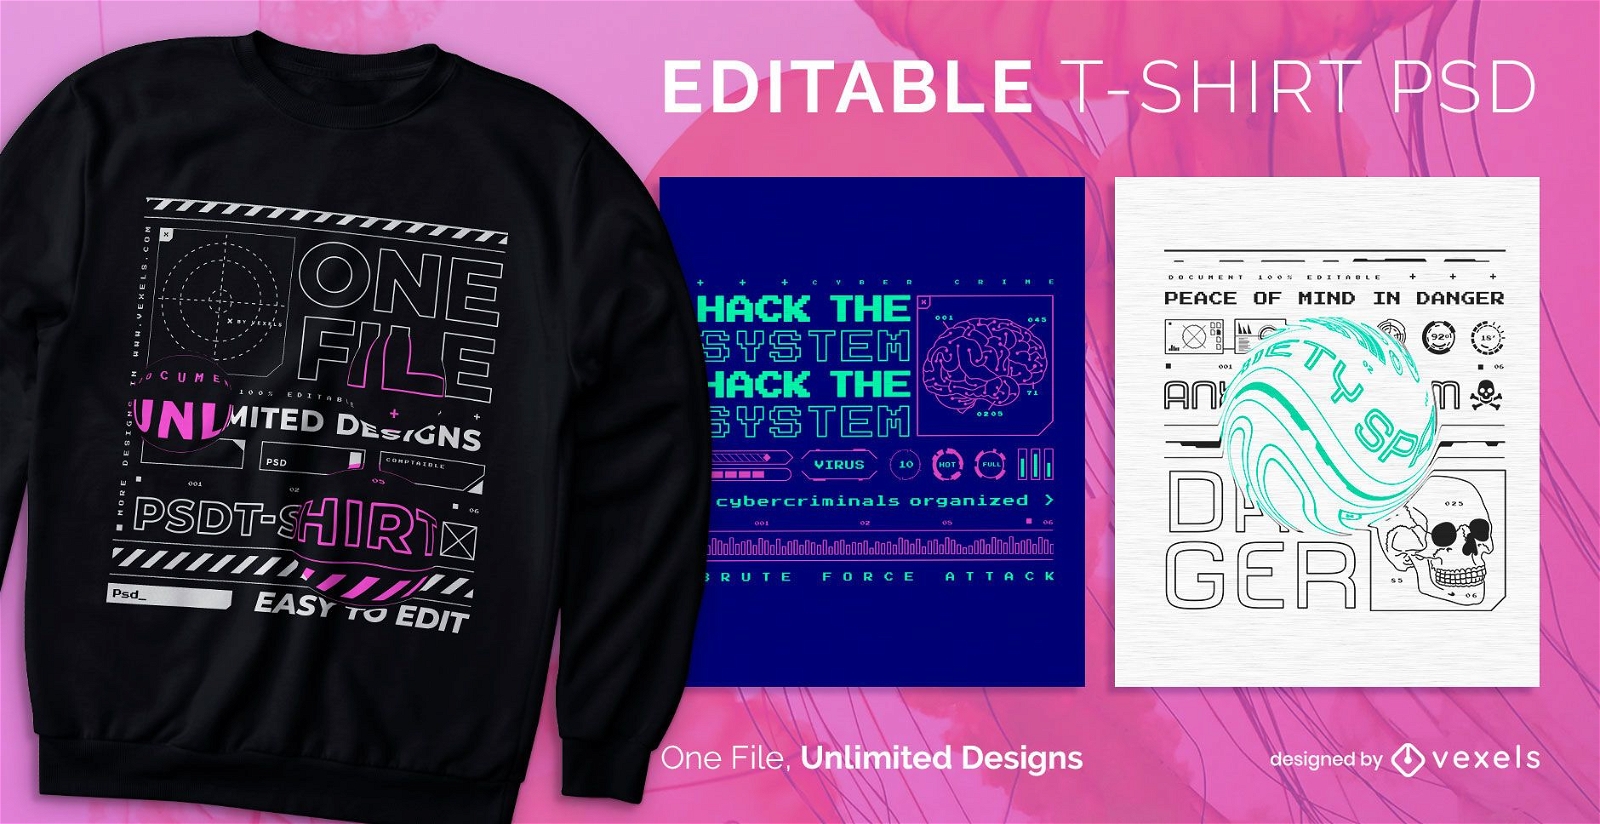 Hacker tech escal?vel t-shirt psd